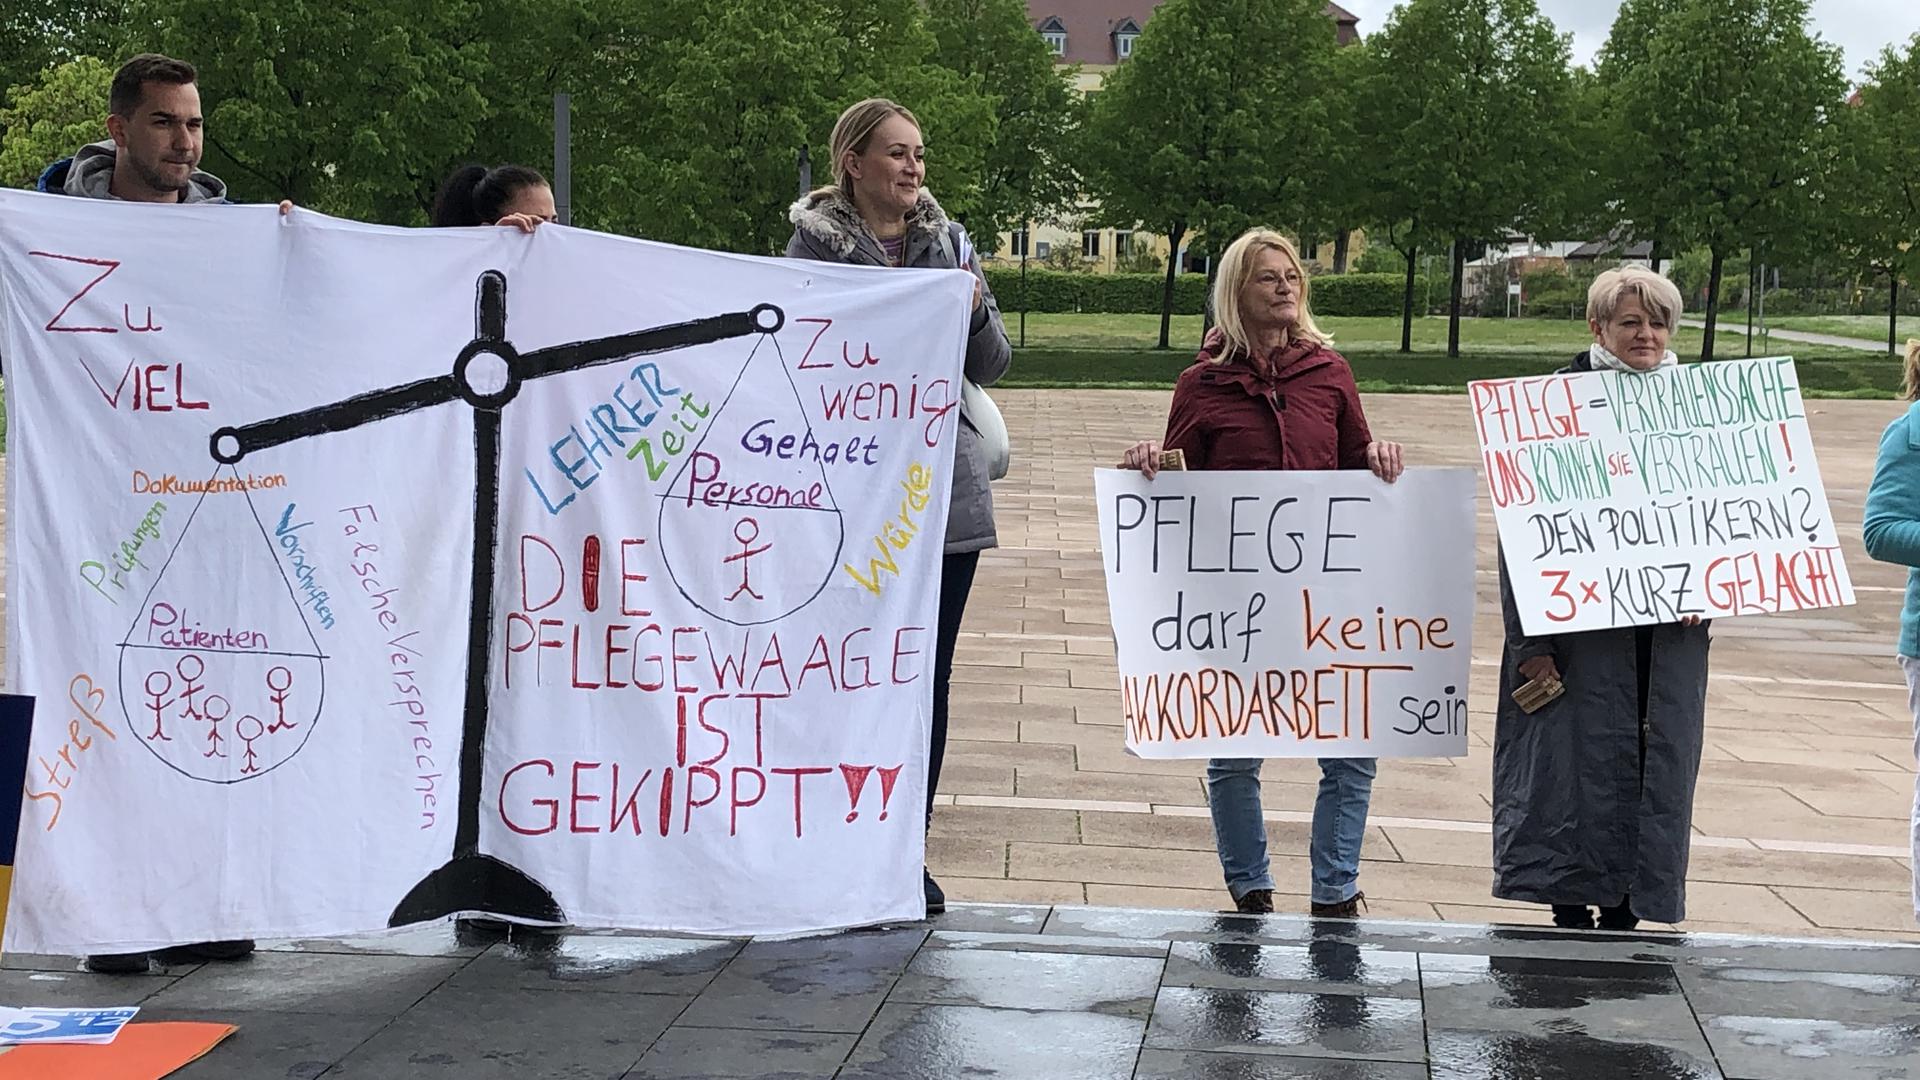 "Die Pflegewaage ist gekippt": Pflegekräfte demonstrieren vor dem Landratsamt Rastatt für bessere Arbeitsbedingungen in der Branche